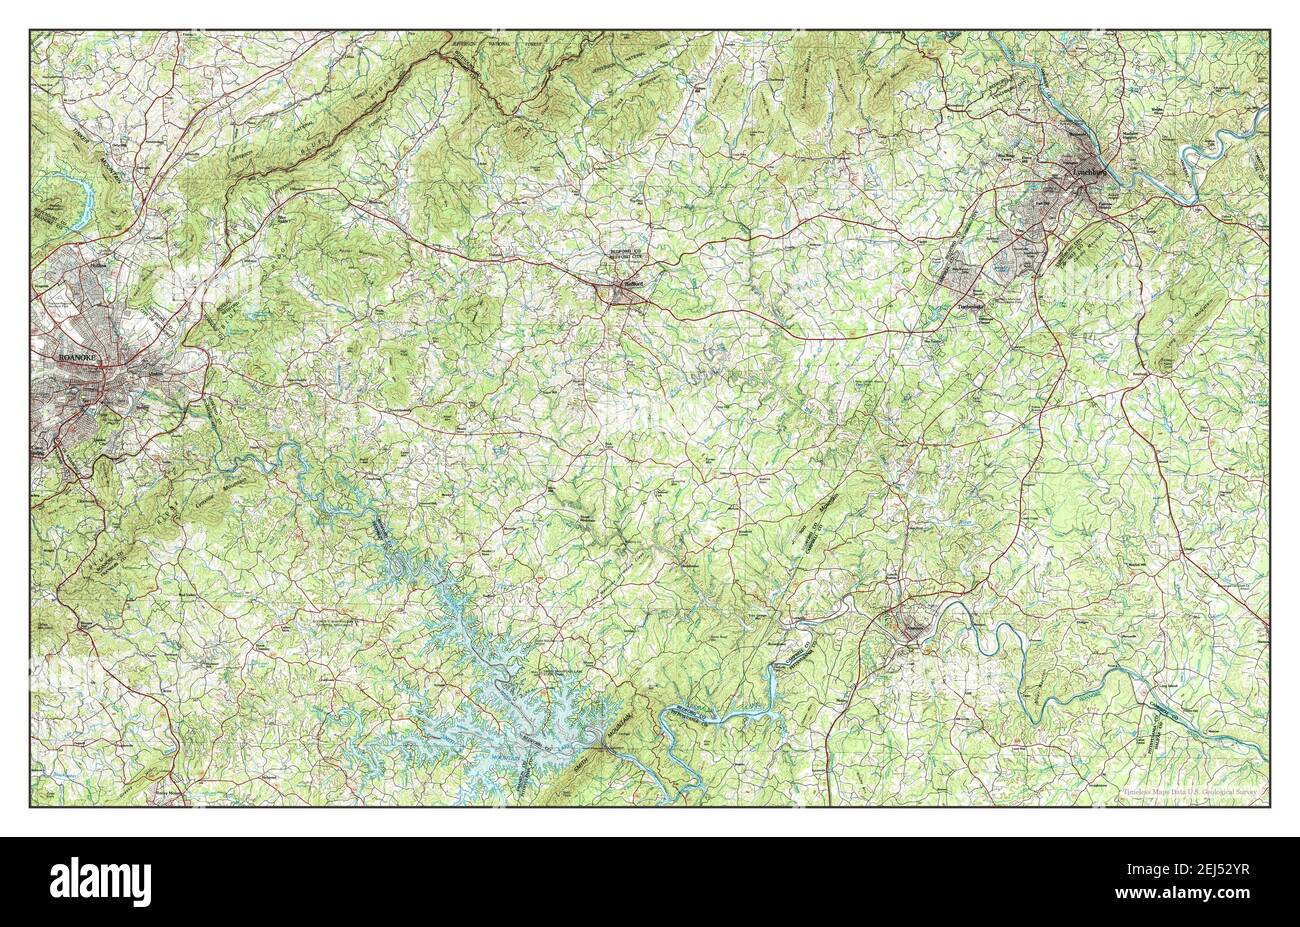 Roanoke, Virginie, carte 1985, 1:100000, États-Unis d'Amérique par Timeless Maps, données U.S. Geological Survey Banque D'Images